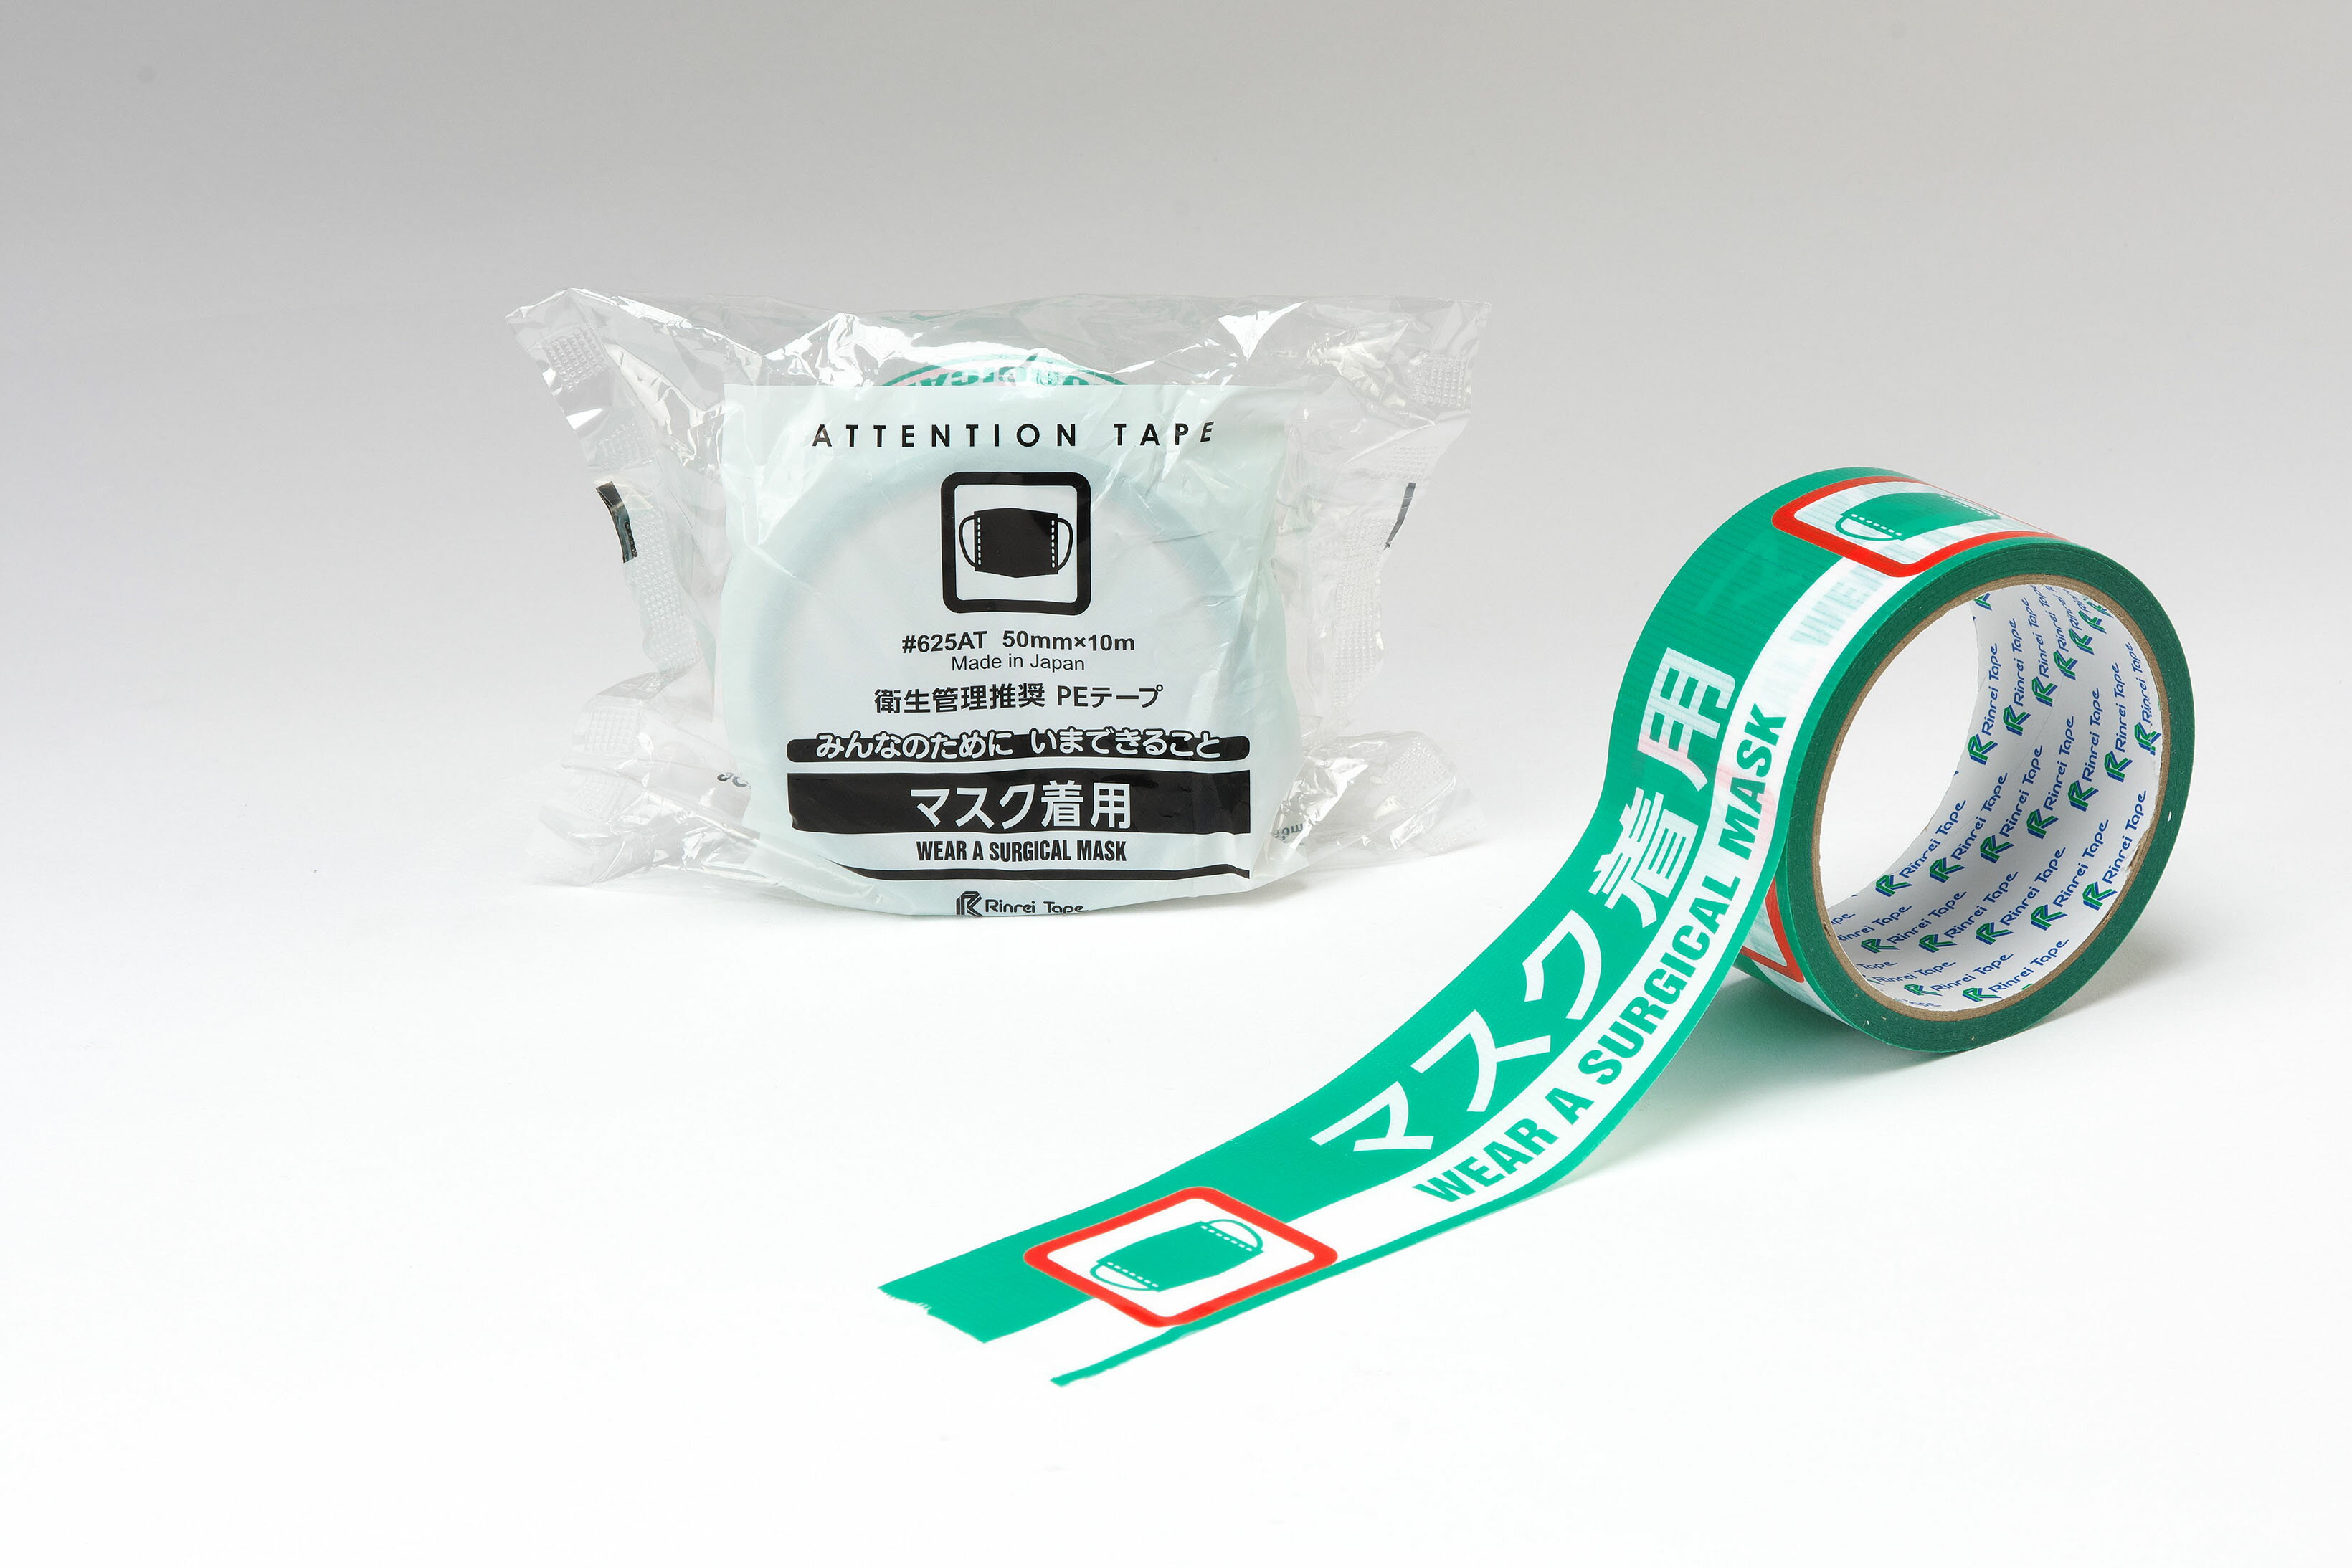 【2万円以上購入で送料無料】リンレイ625AT 『マスク着用』 アテンションテープ 1巻 50mm x 10m